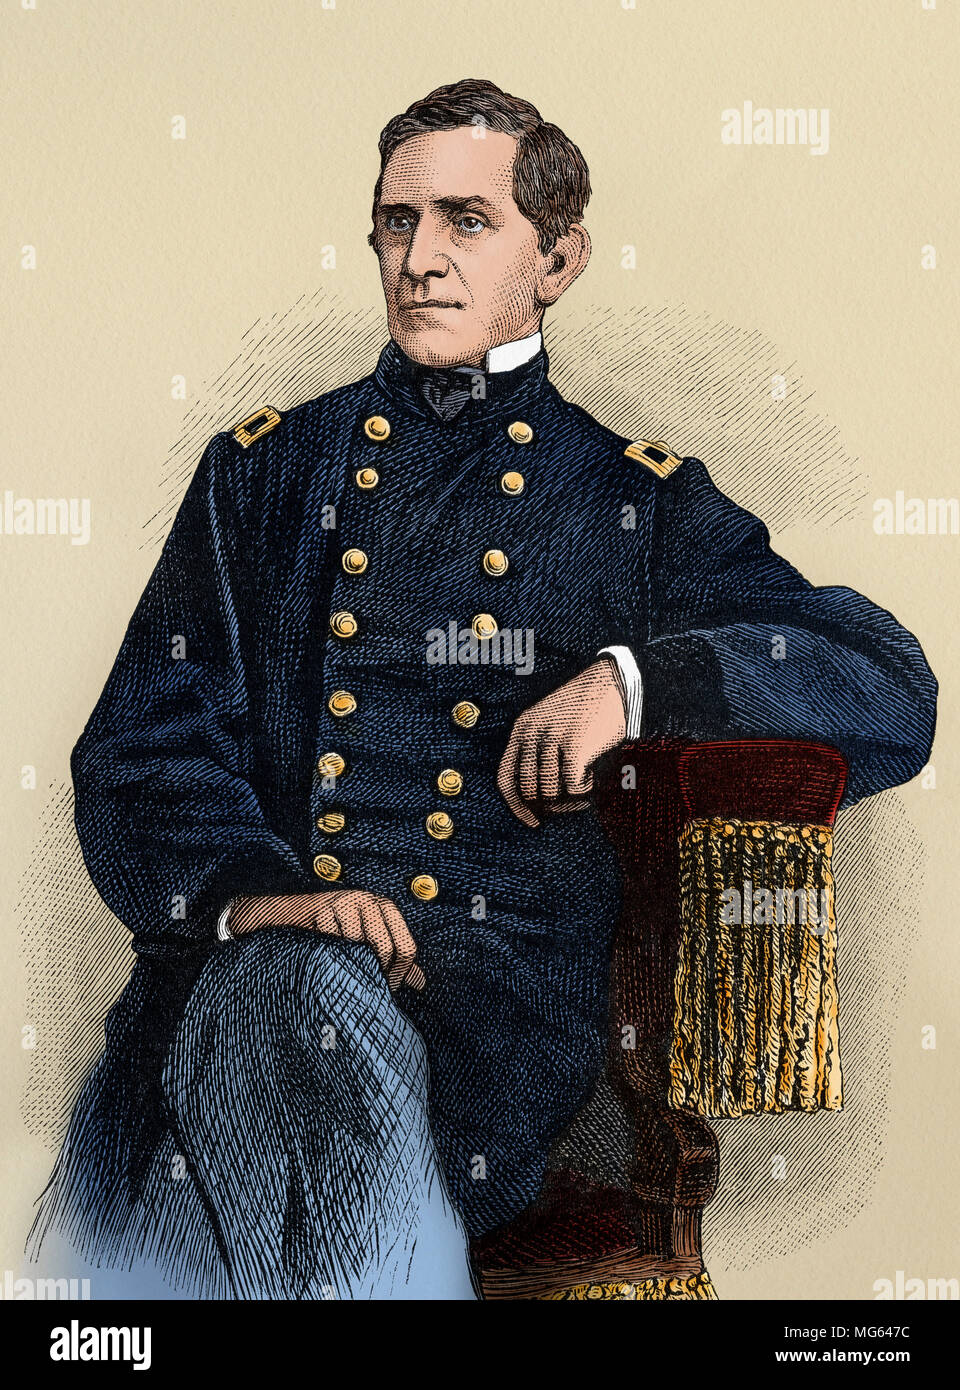 Le Major-général de l'Armée de l'Union Edward Sprigg Canby. Gravure sur bois couleur numérique Banque D'Images